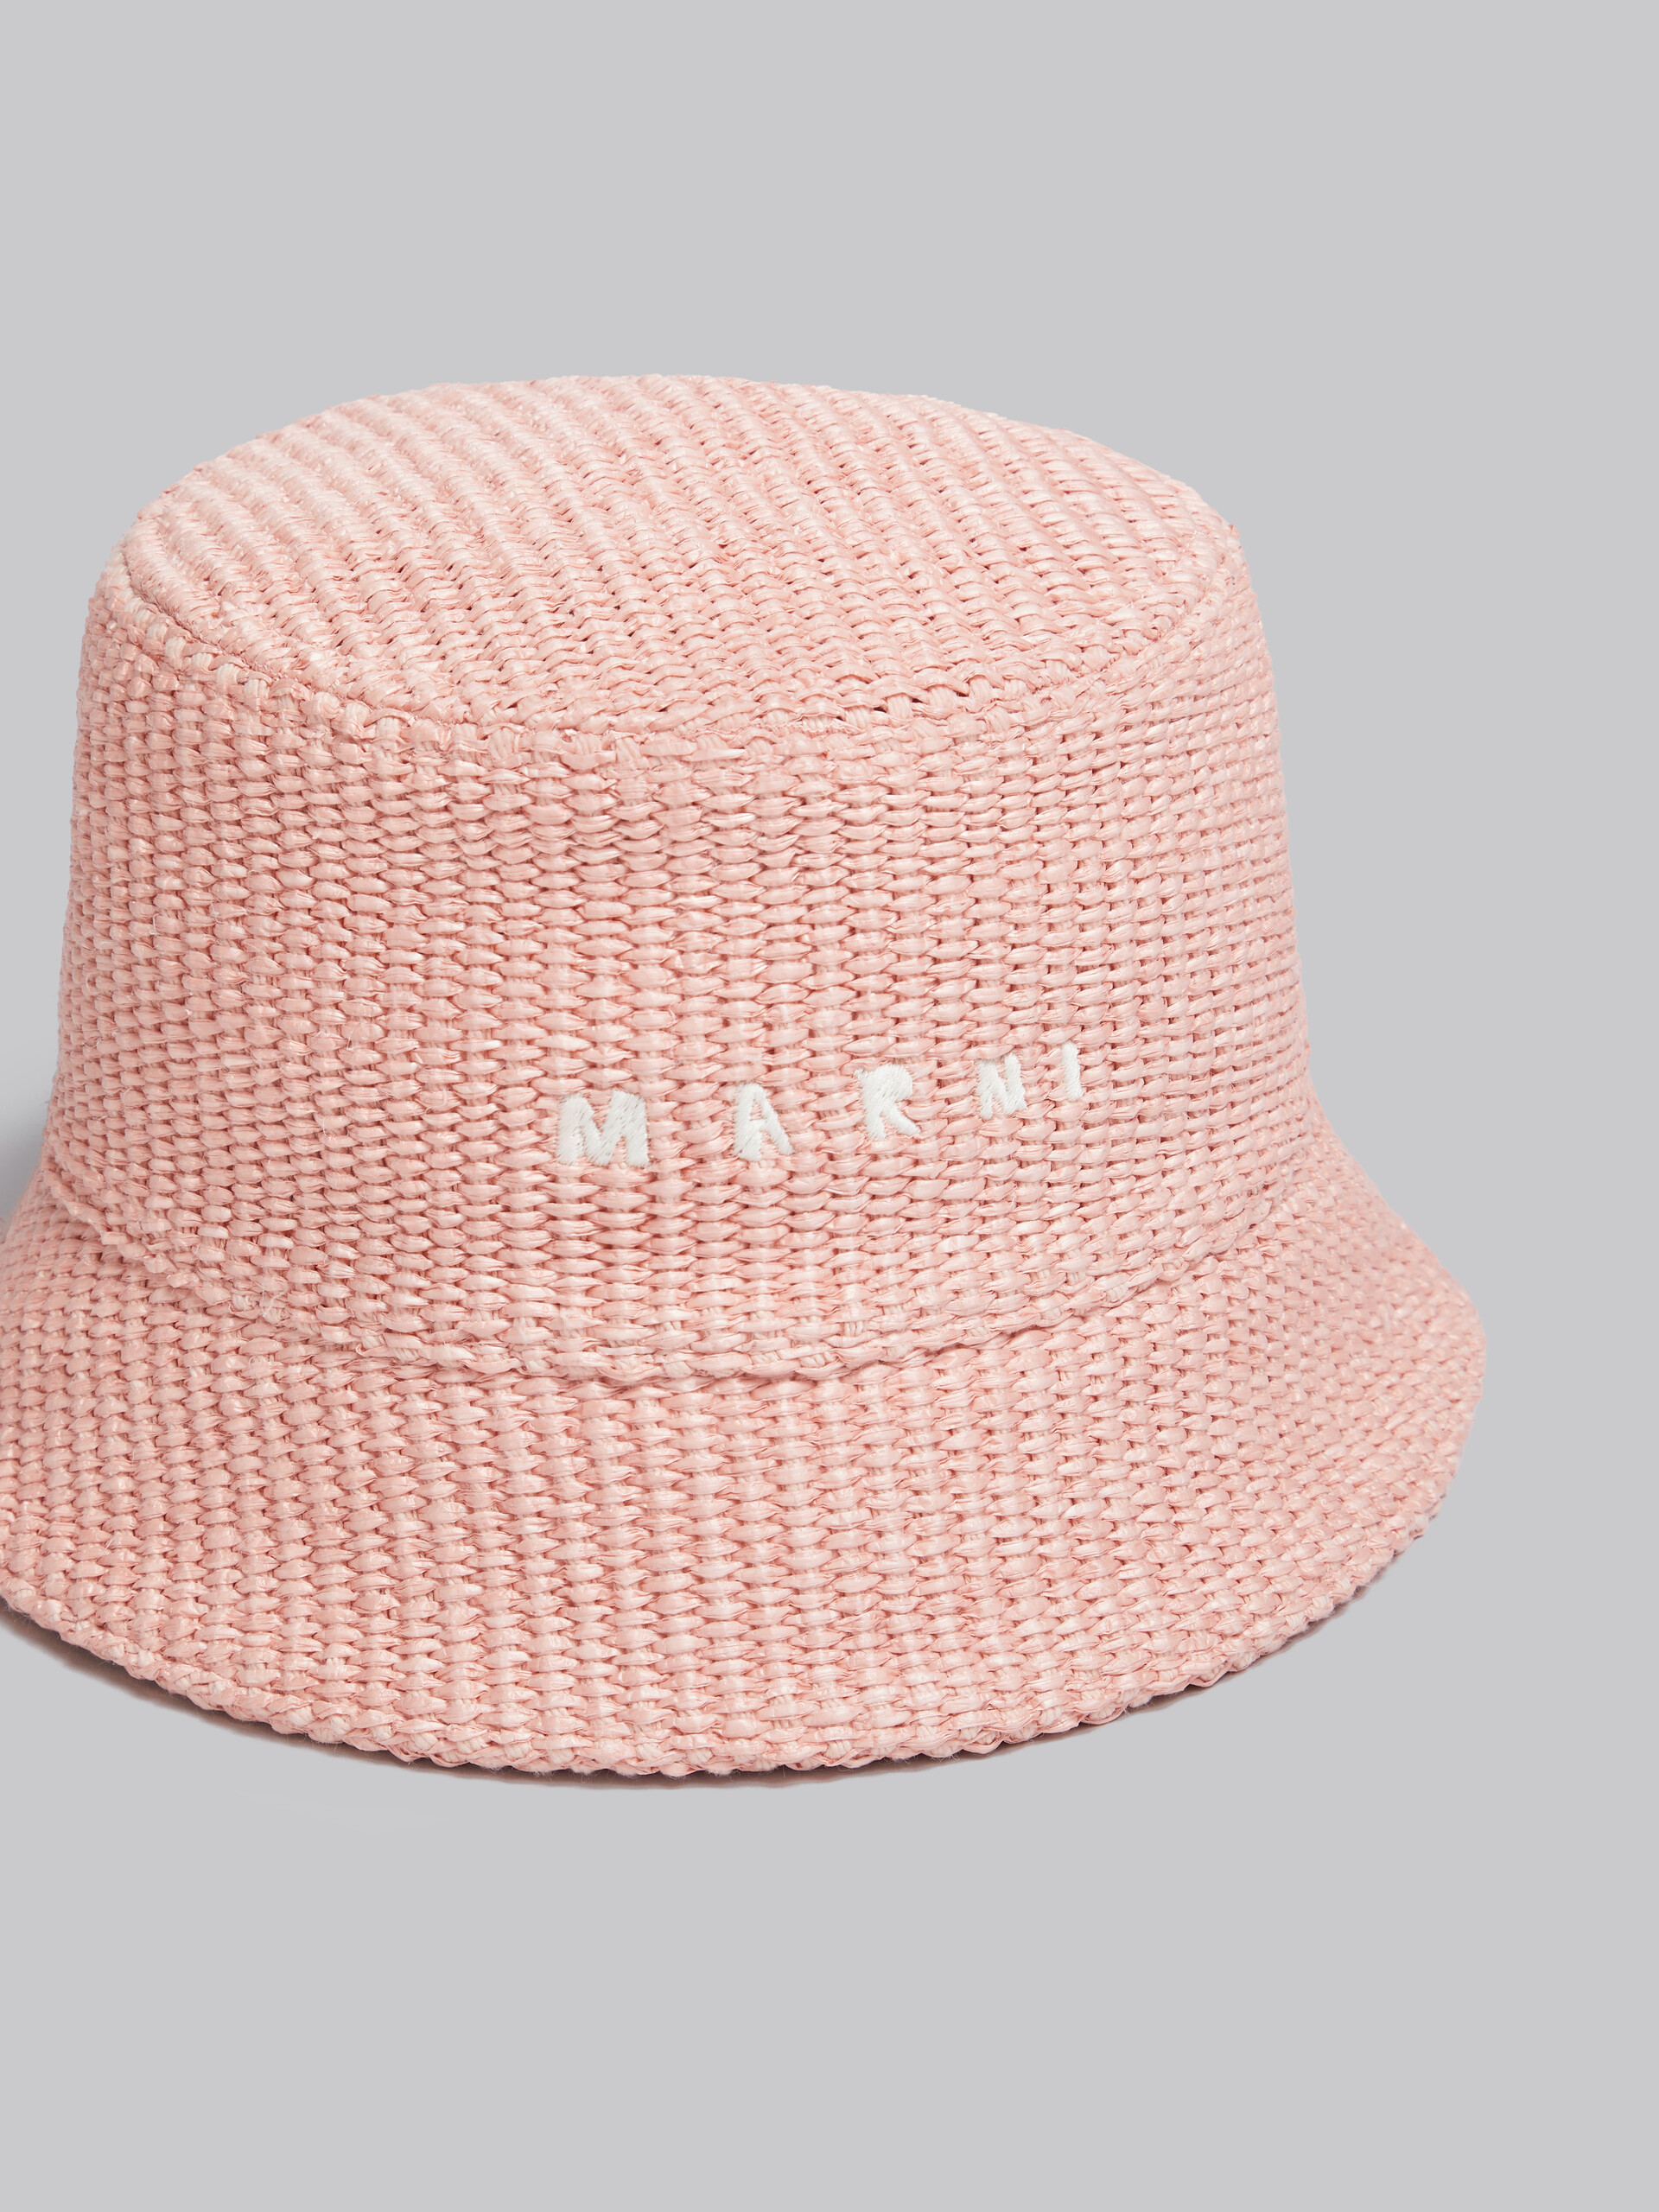 Cappello bucket rosa in tessuto effetto rafia con logo ricamato - Cappelli - Image 4